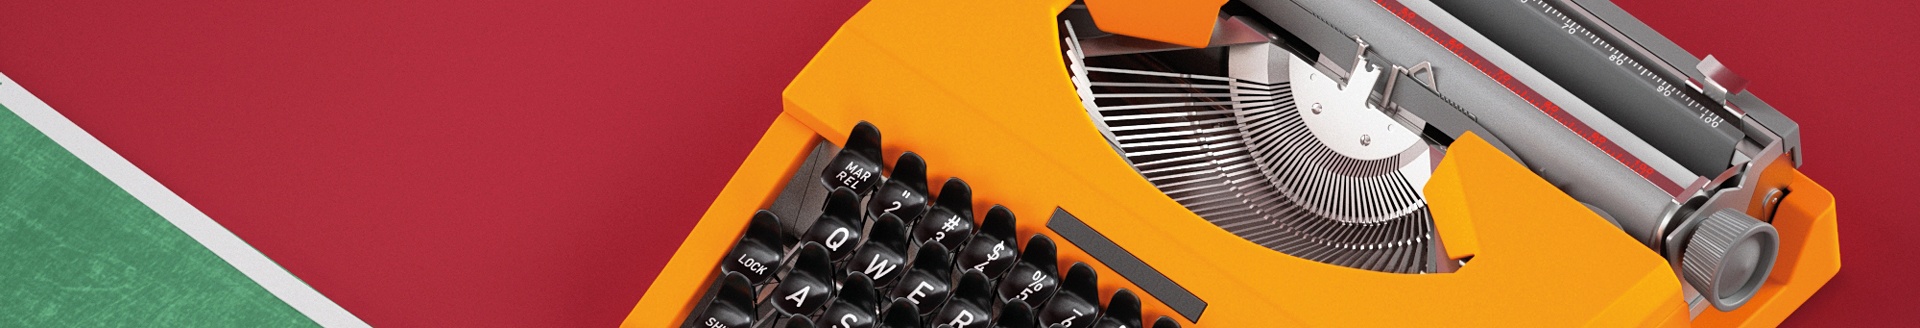 Banner Kontaktseite - bunte Schreibmaschine - internetwarriors GmbH